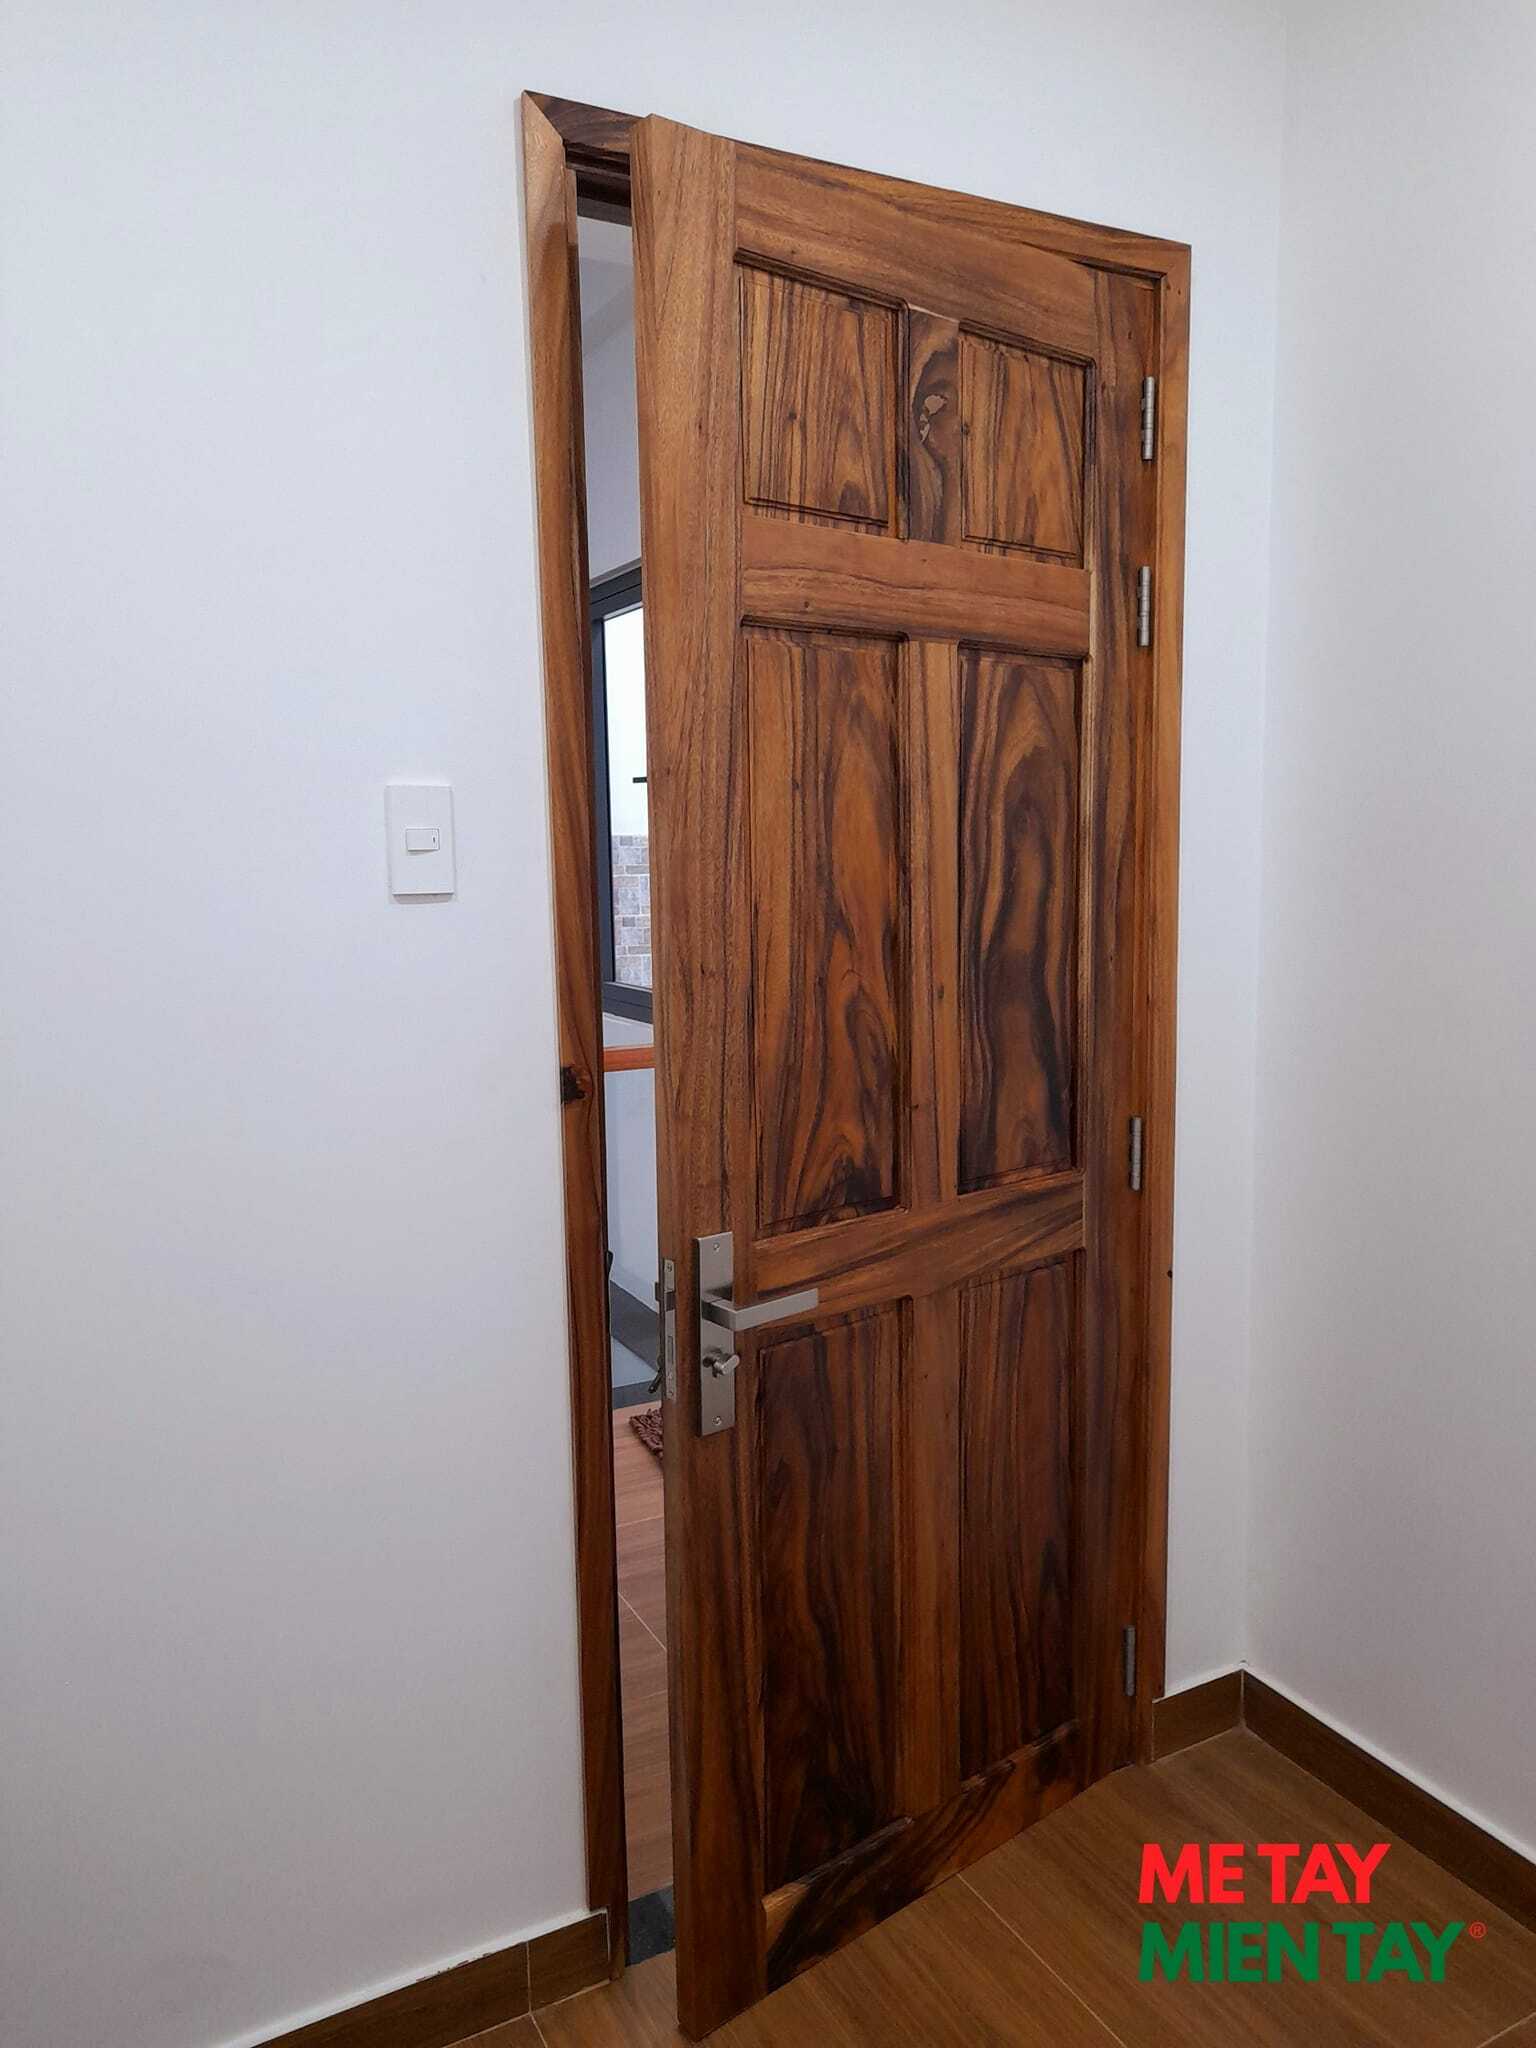 cửa phòng gỗ me tây